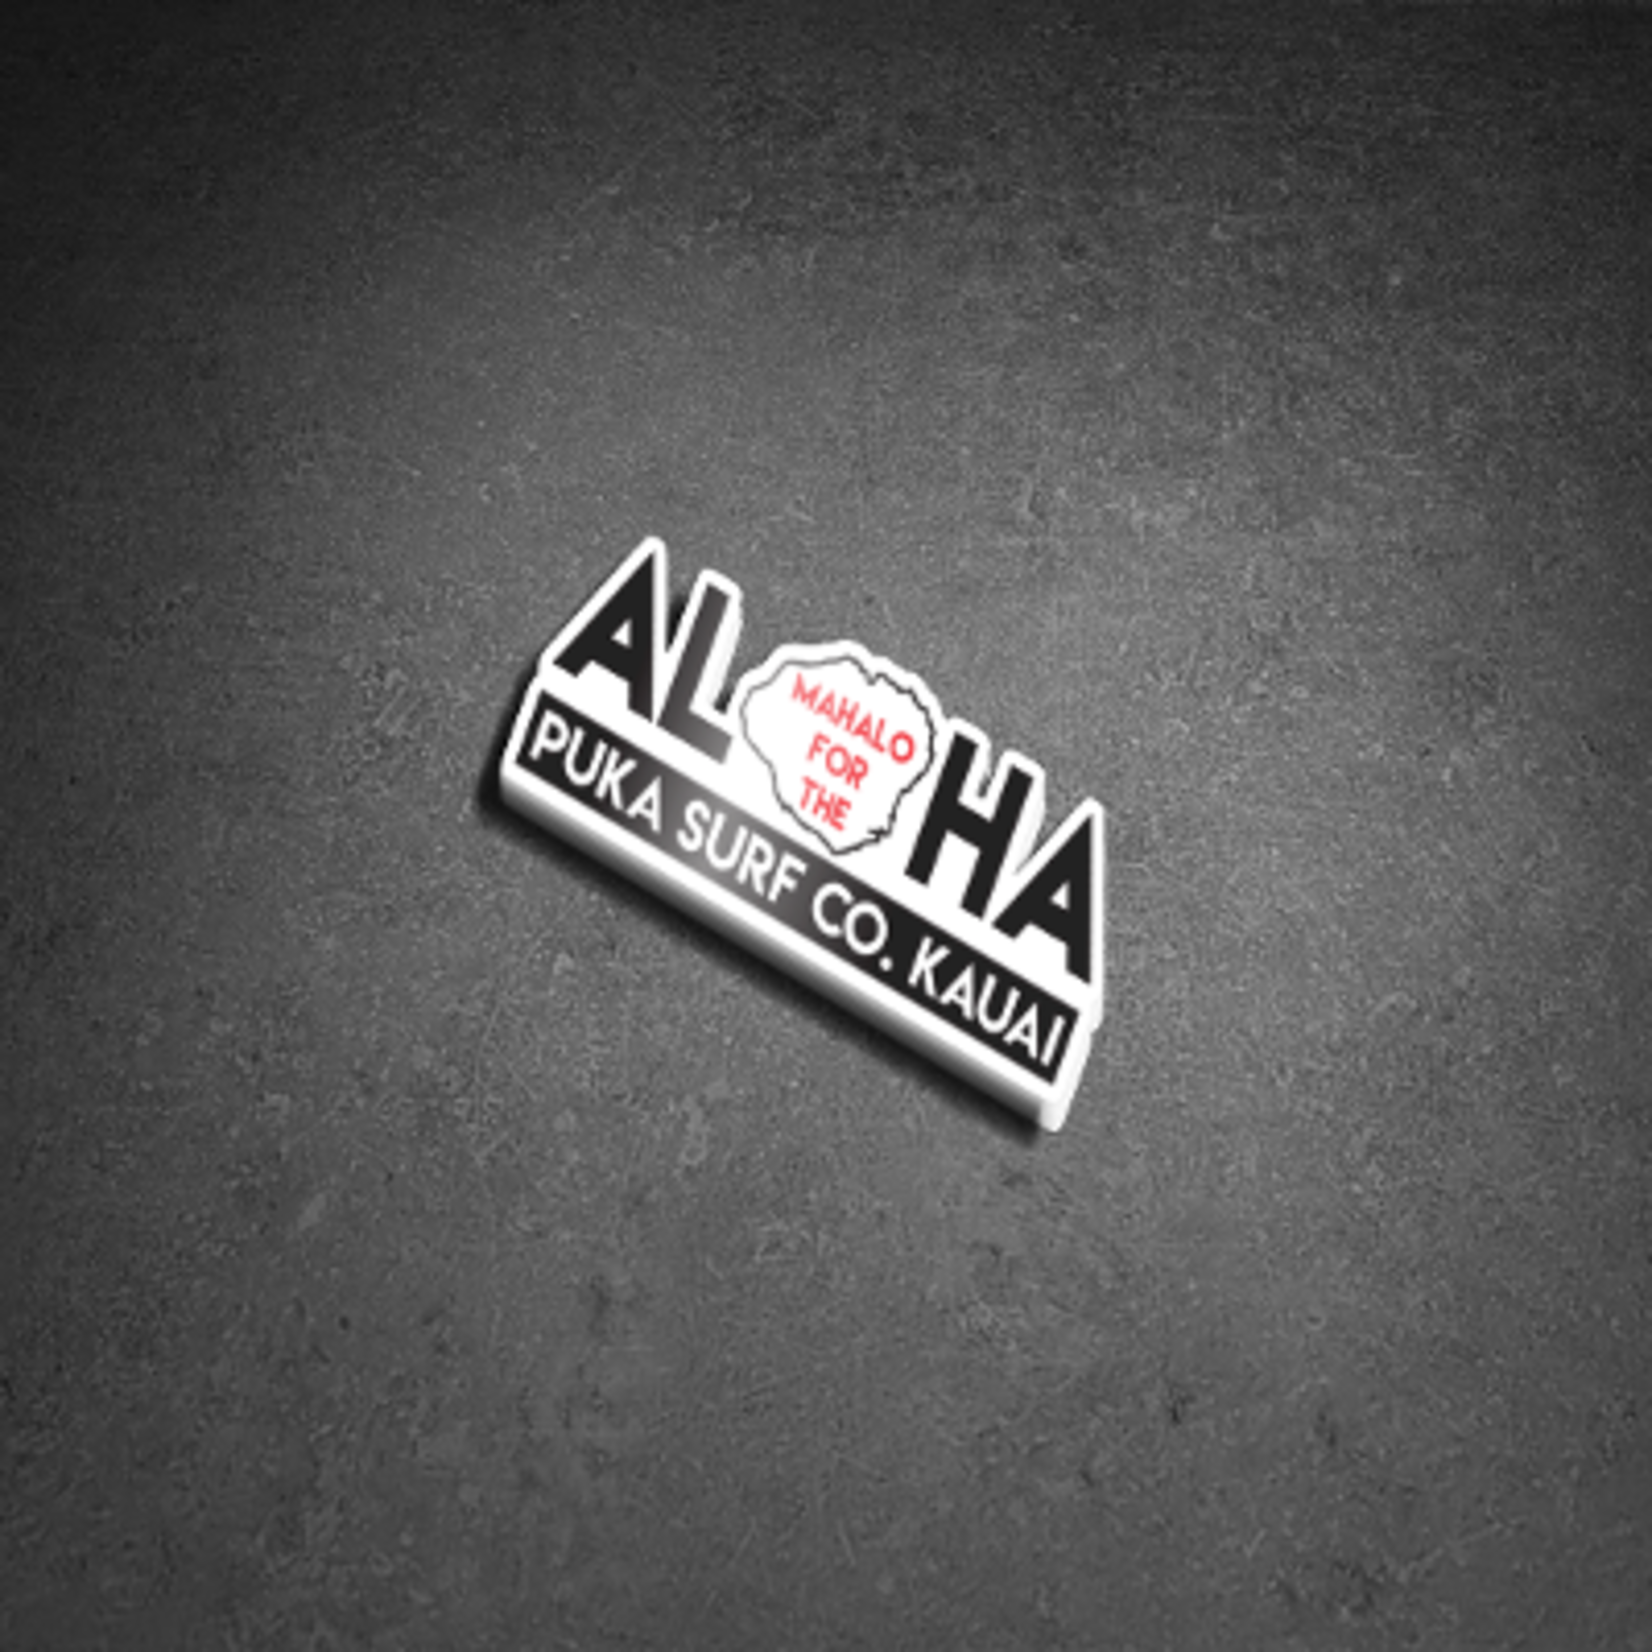 Puka Surf Co. Hawaii Mahalo for the Aloha Sticker 4.5” X 1.8”